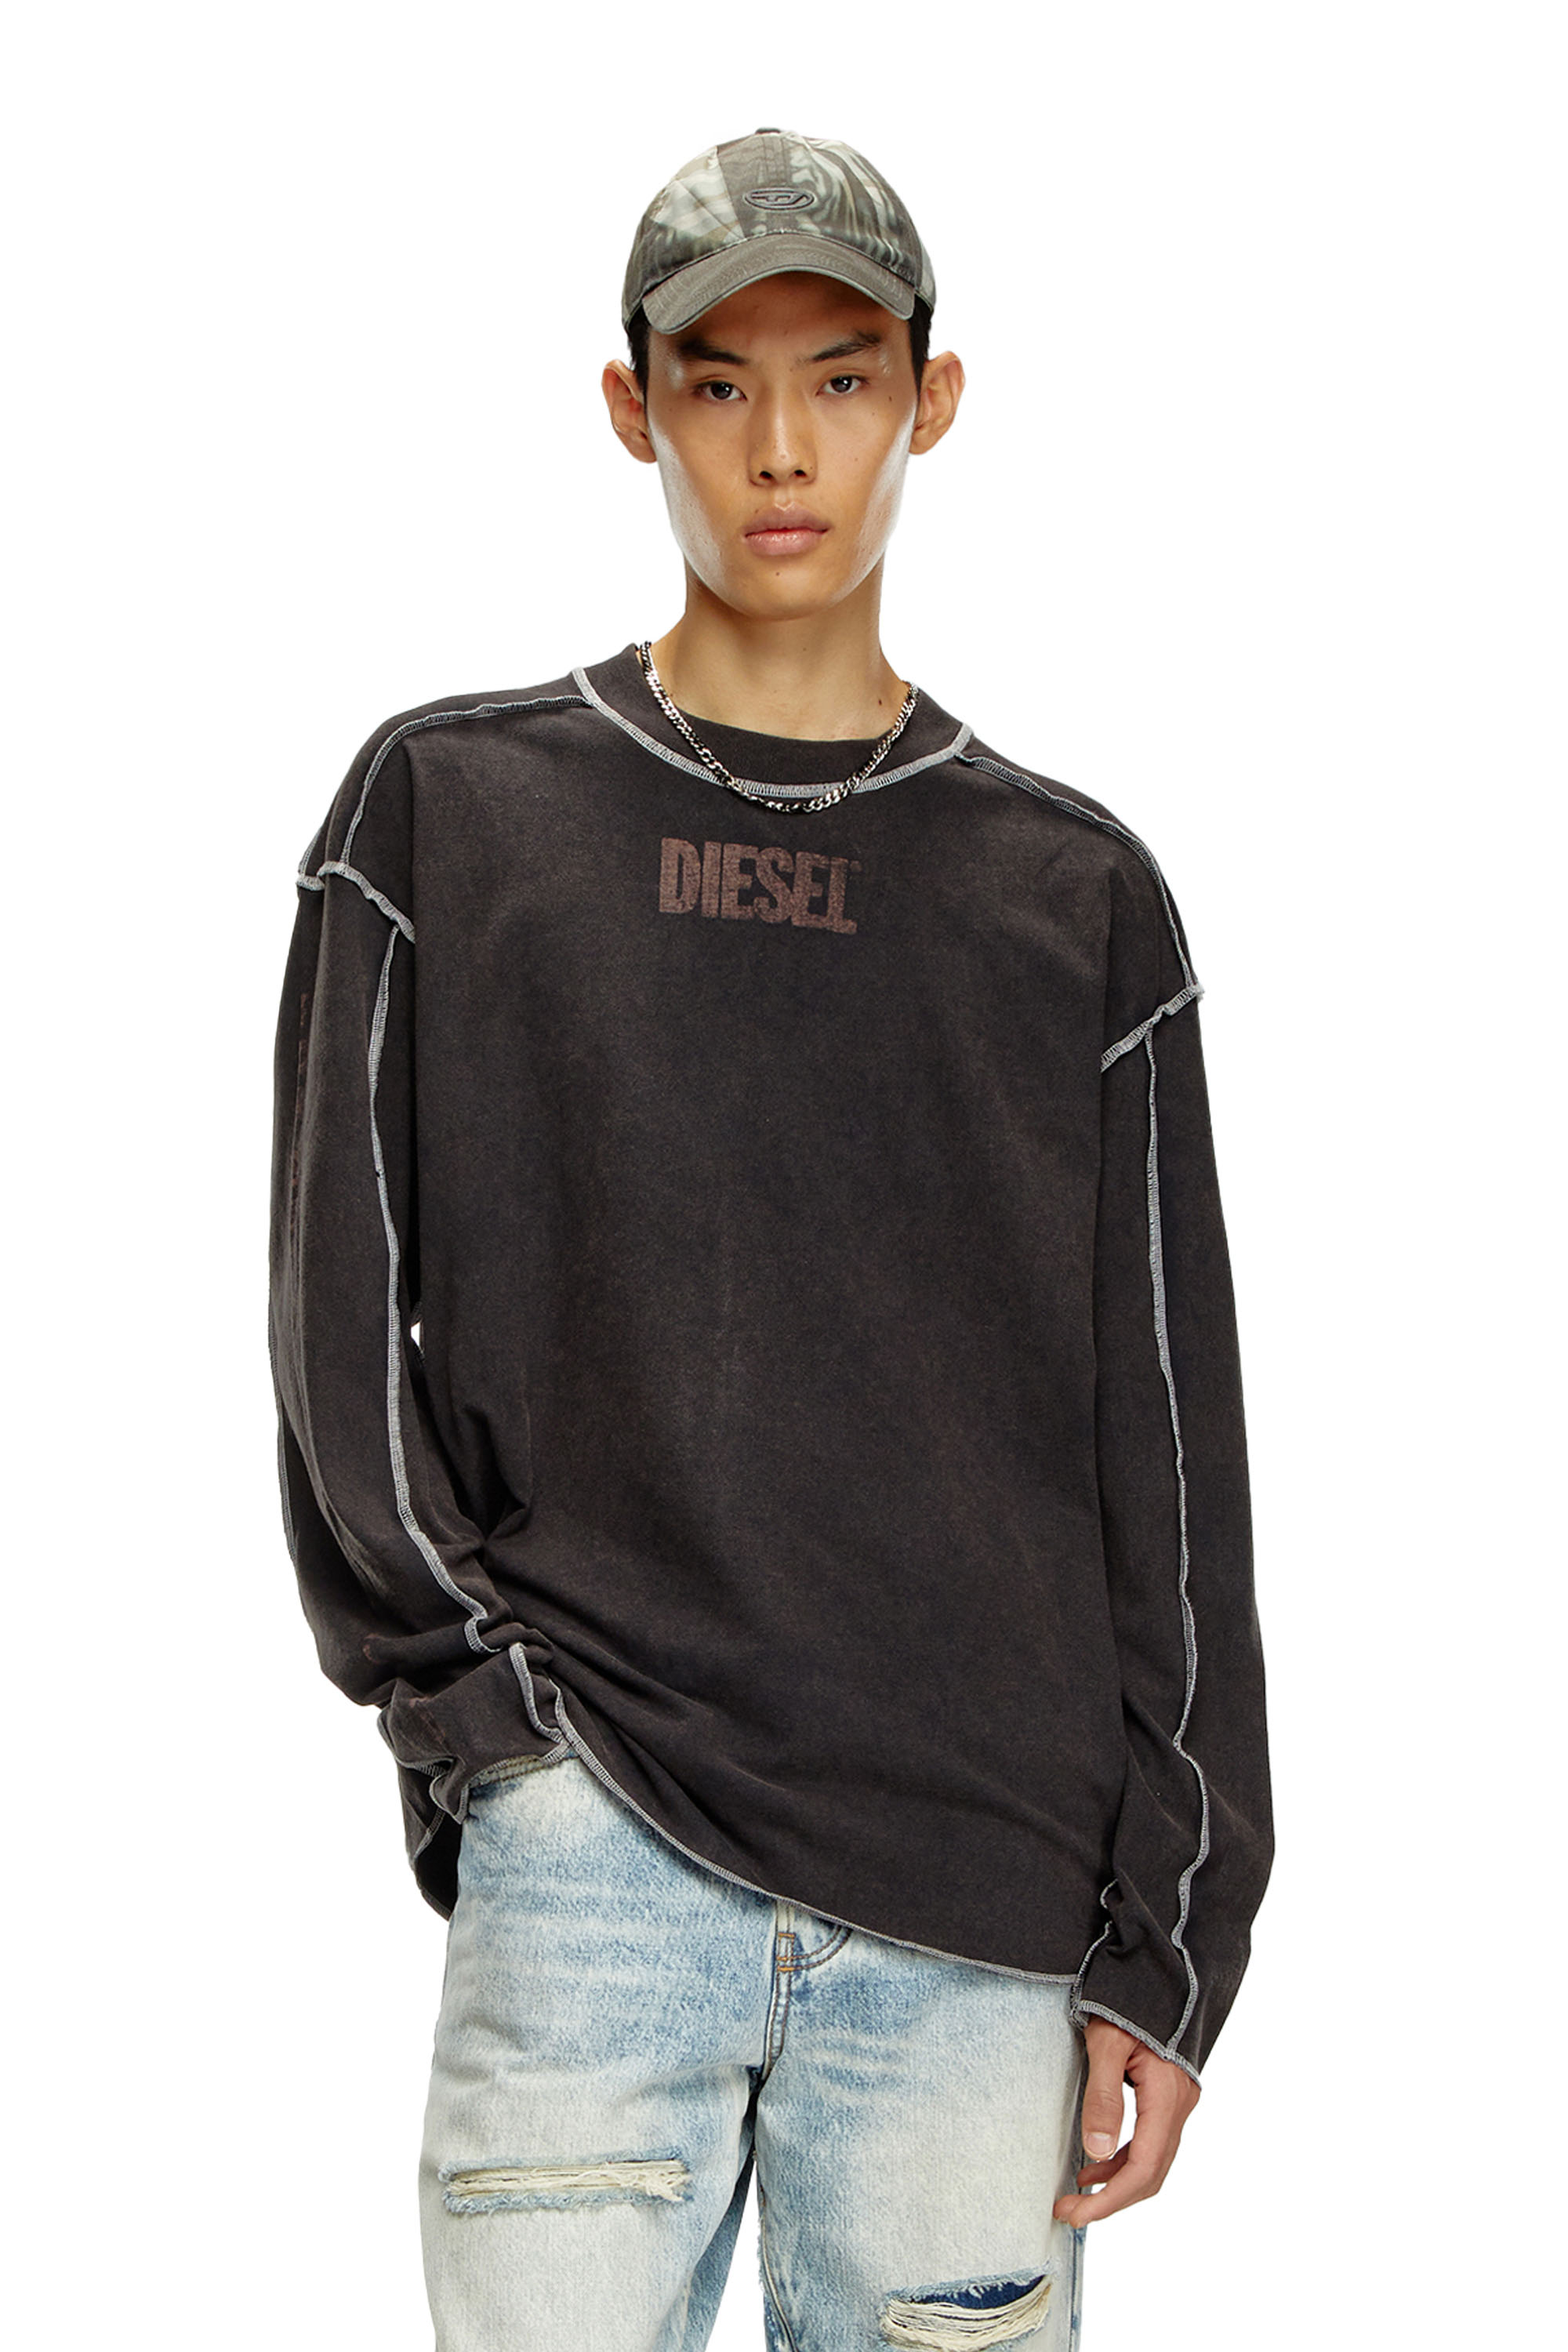 Diesel - T-CRAOR-LS, Homme T-shirt à manches longues avec effet « inside-out » in Gris - Image 1